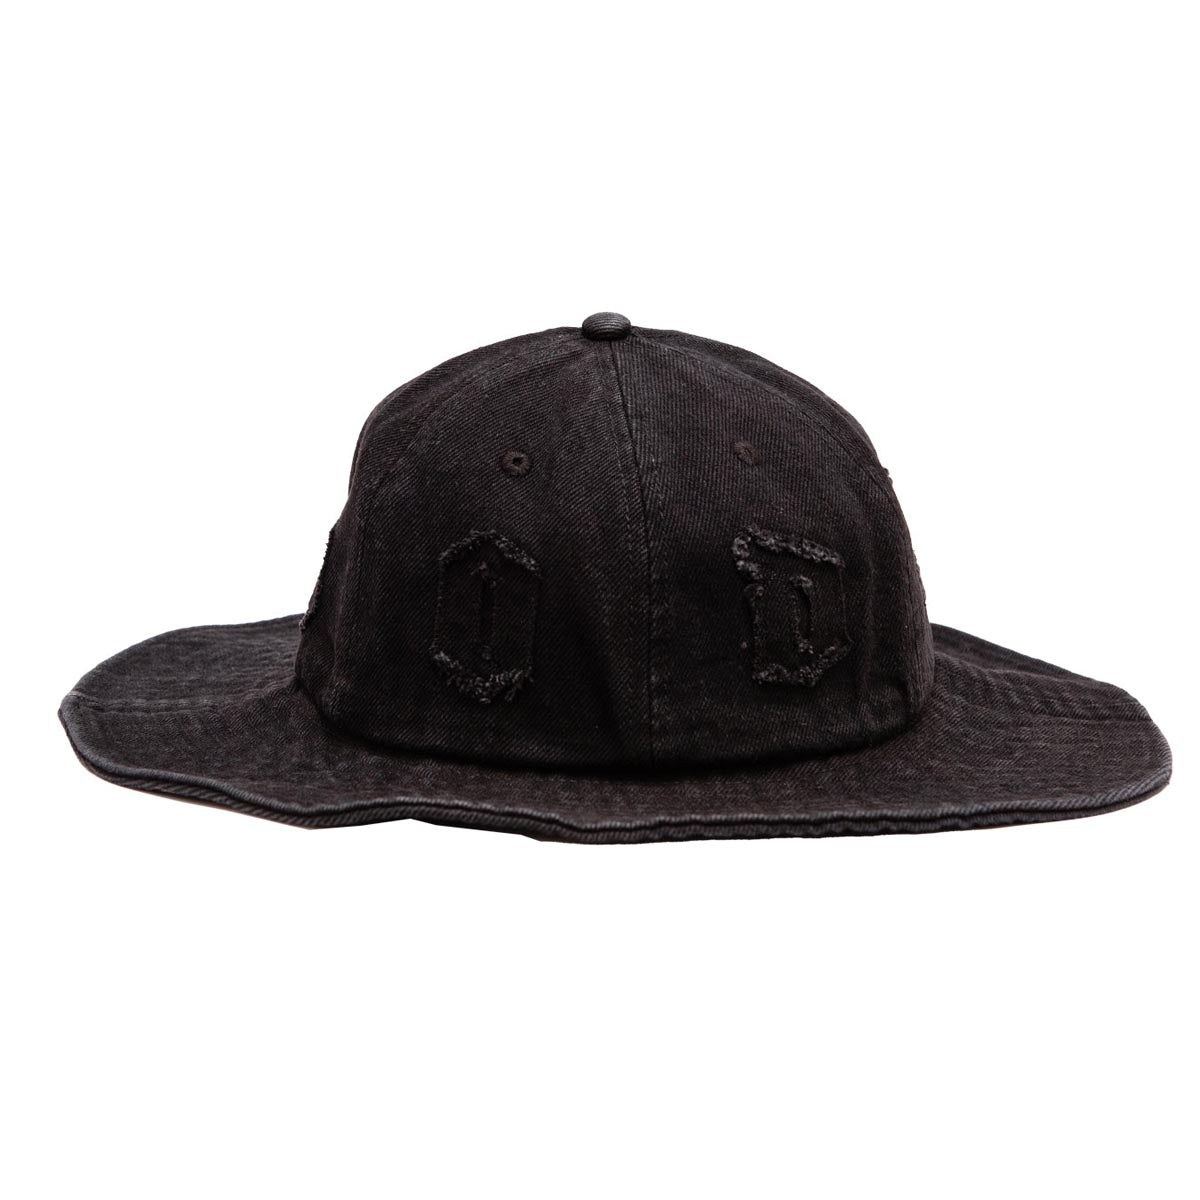 Hoddle Bucket Hat - Black Wash image 2